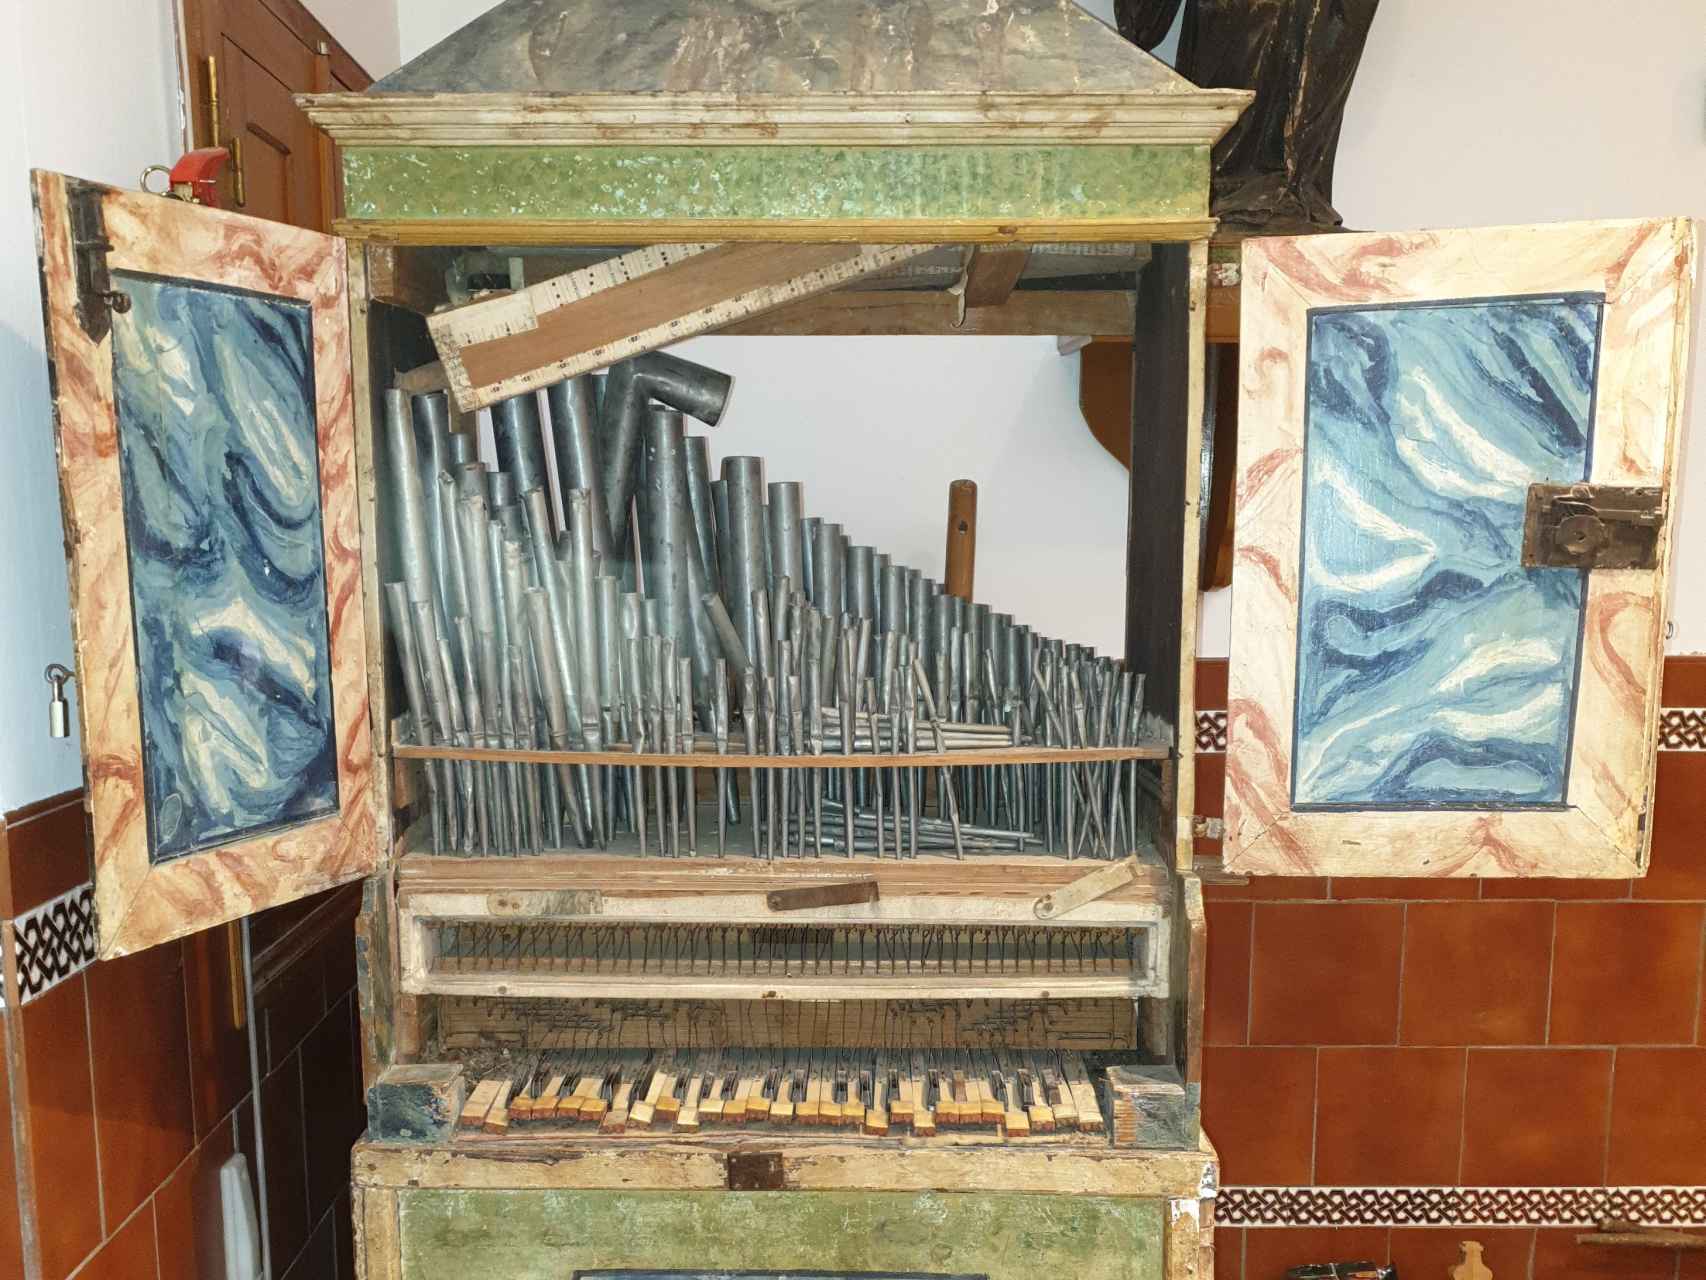 El órgano realejo de la iglesia parroquial de San Juan Bautista de Camarena (Toledo).